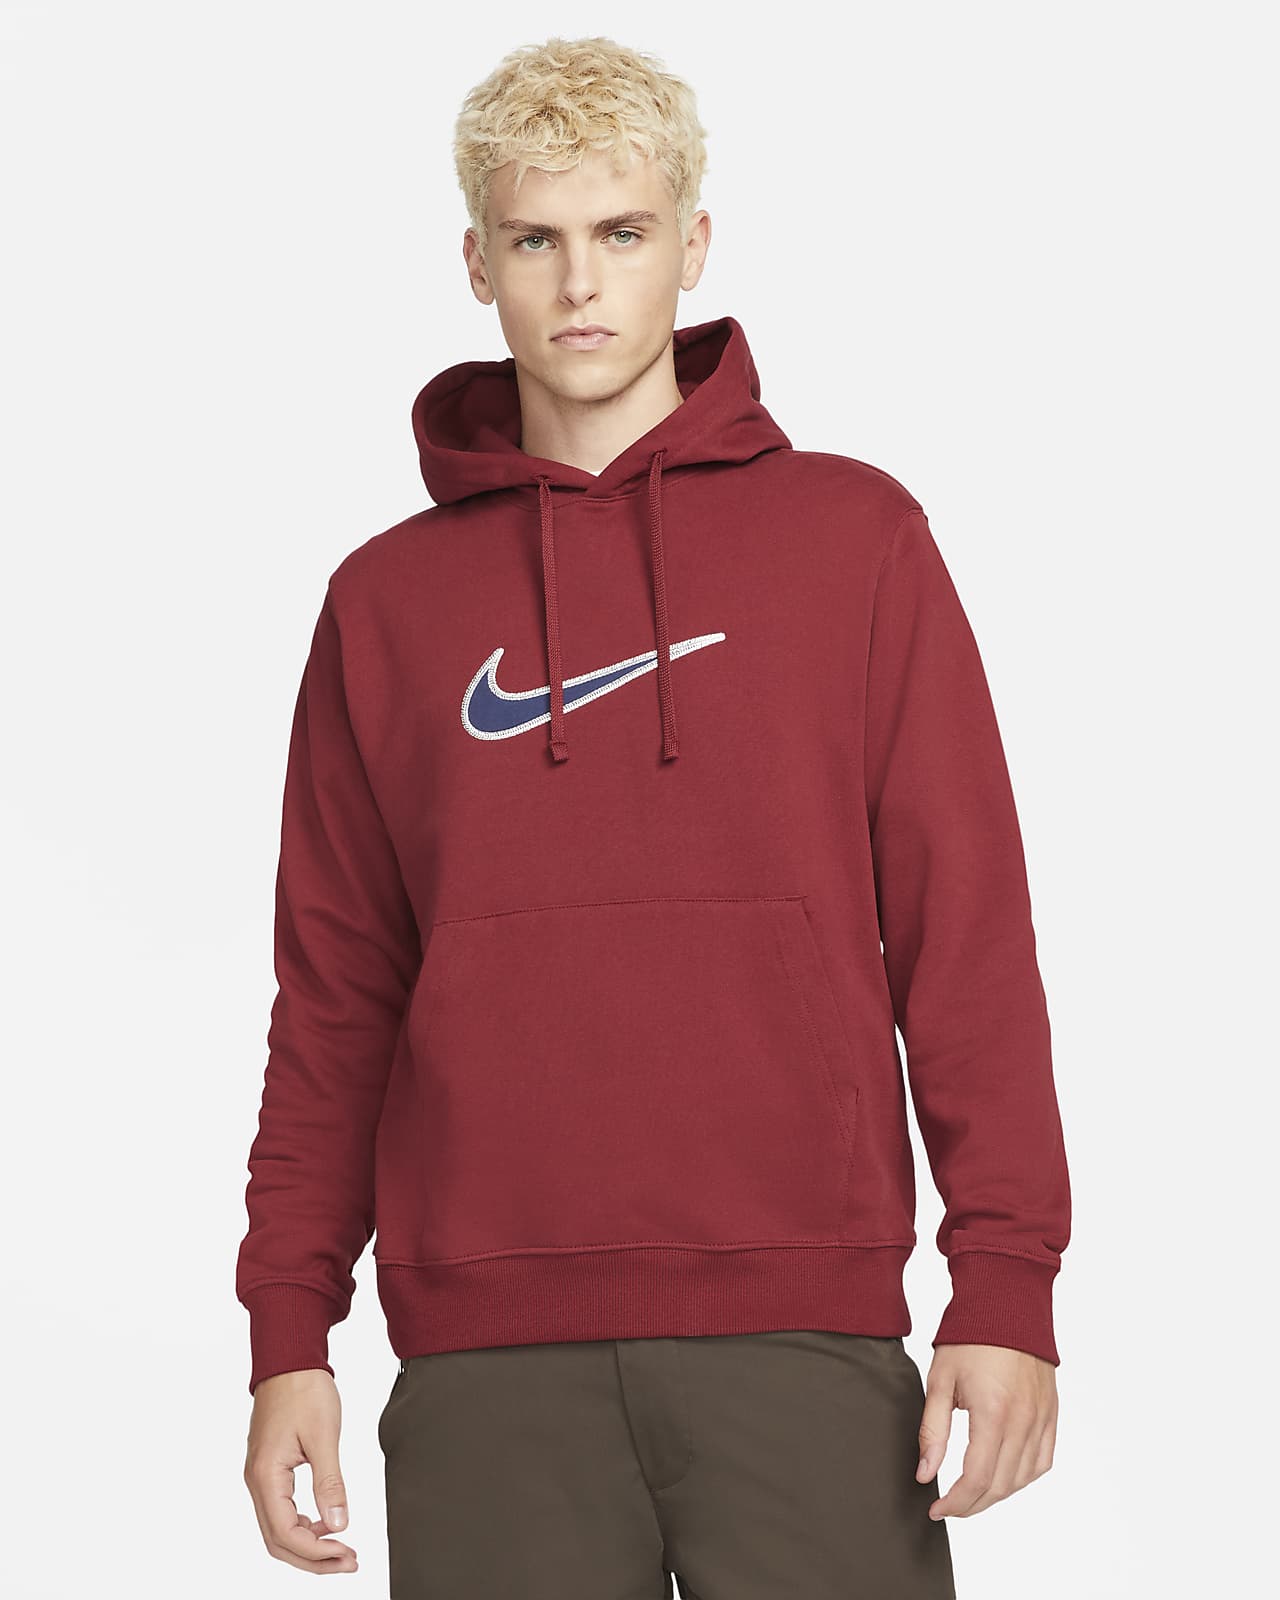 Felpa pullover in fleece con cappuccio Nike Sportswear Swoosh - Uomo